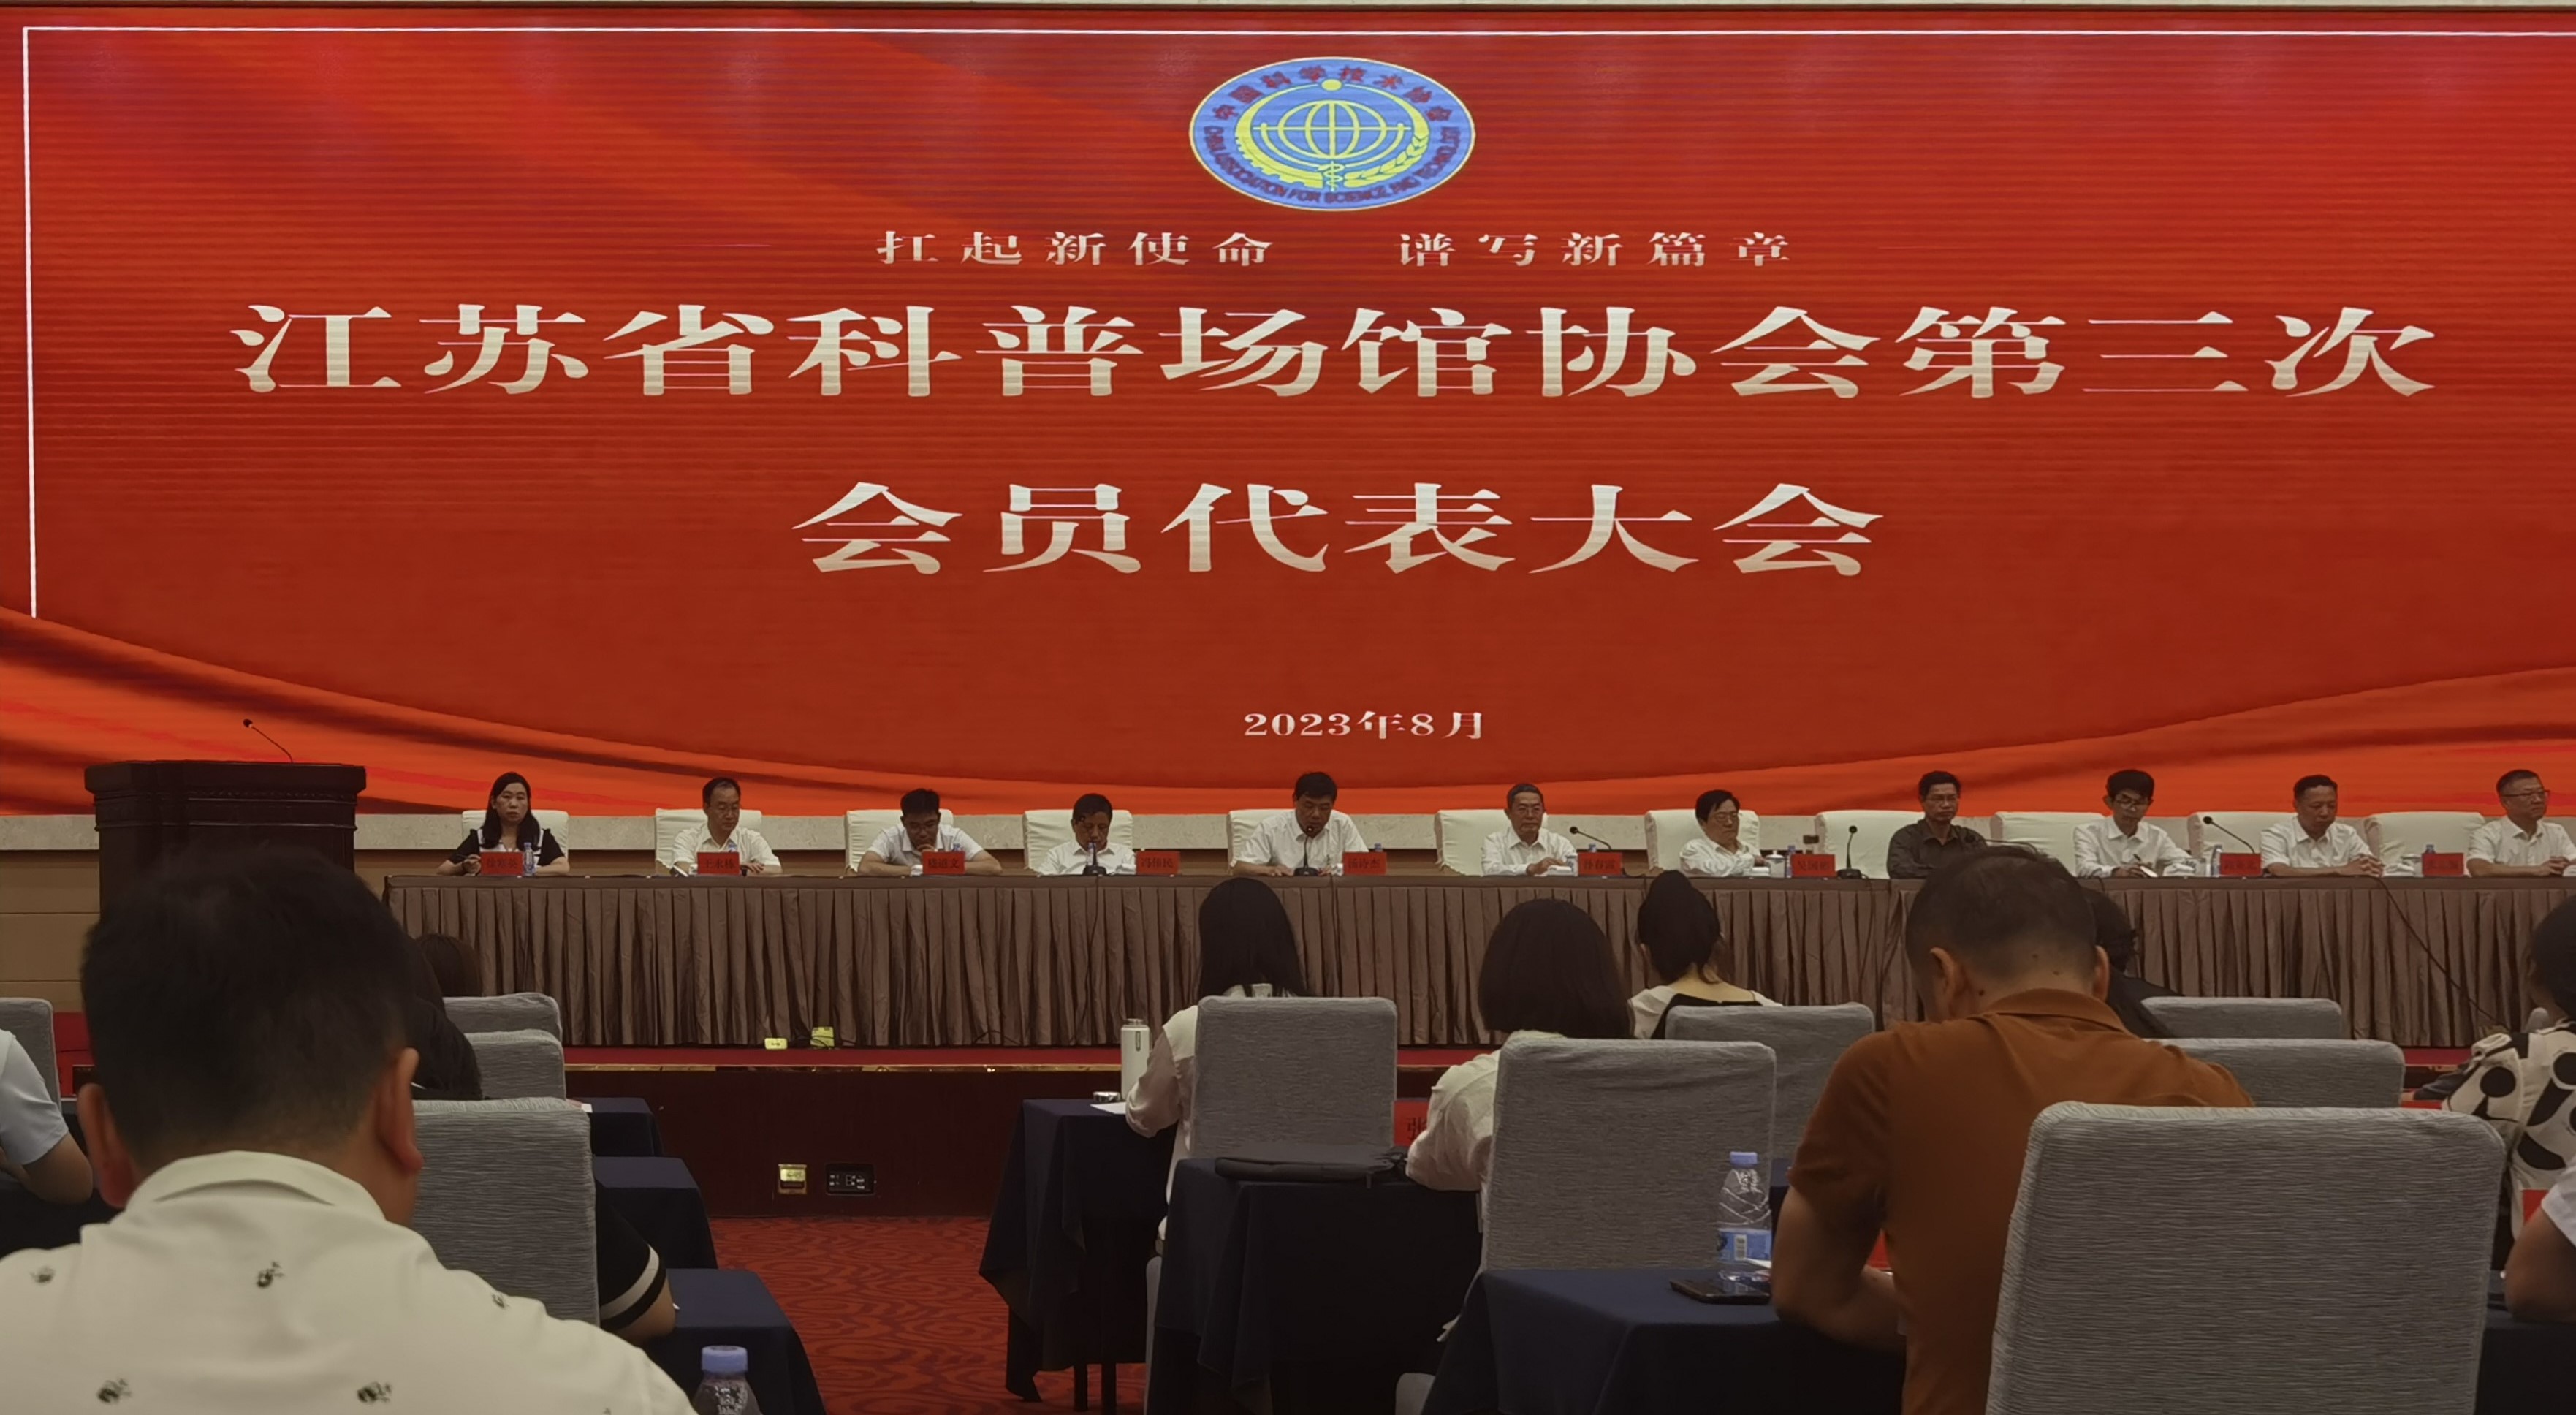 所（园）参加江苏省科普场馆协会第三次会员代表大会